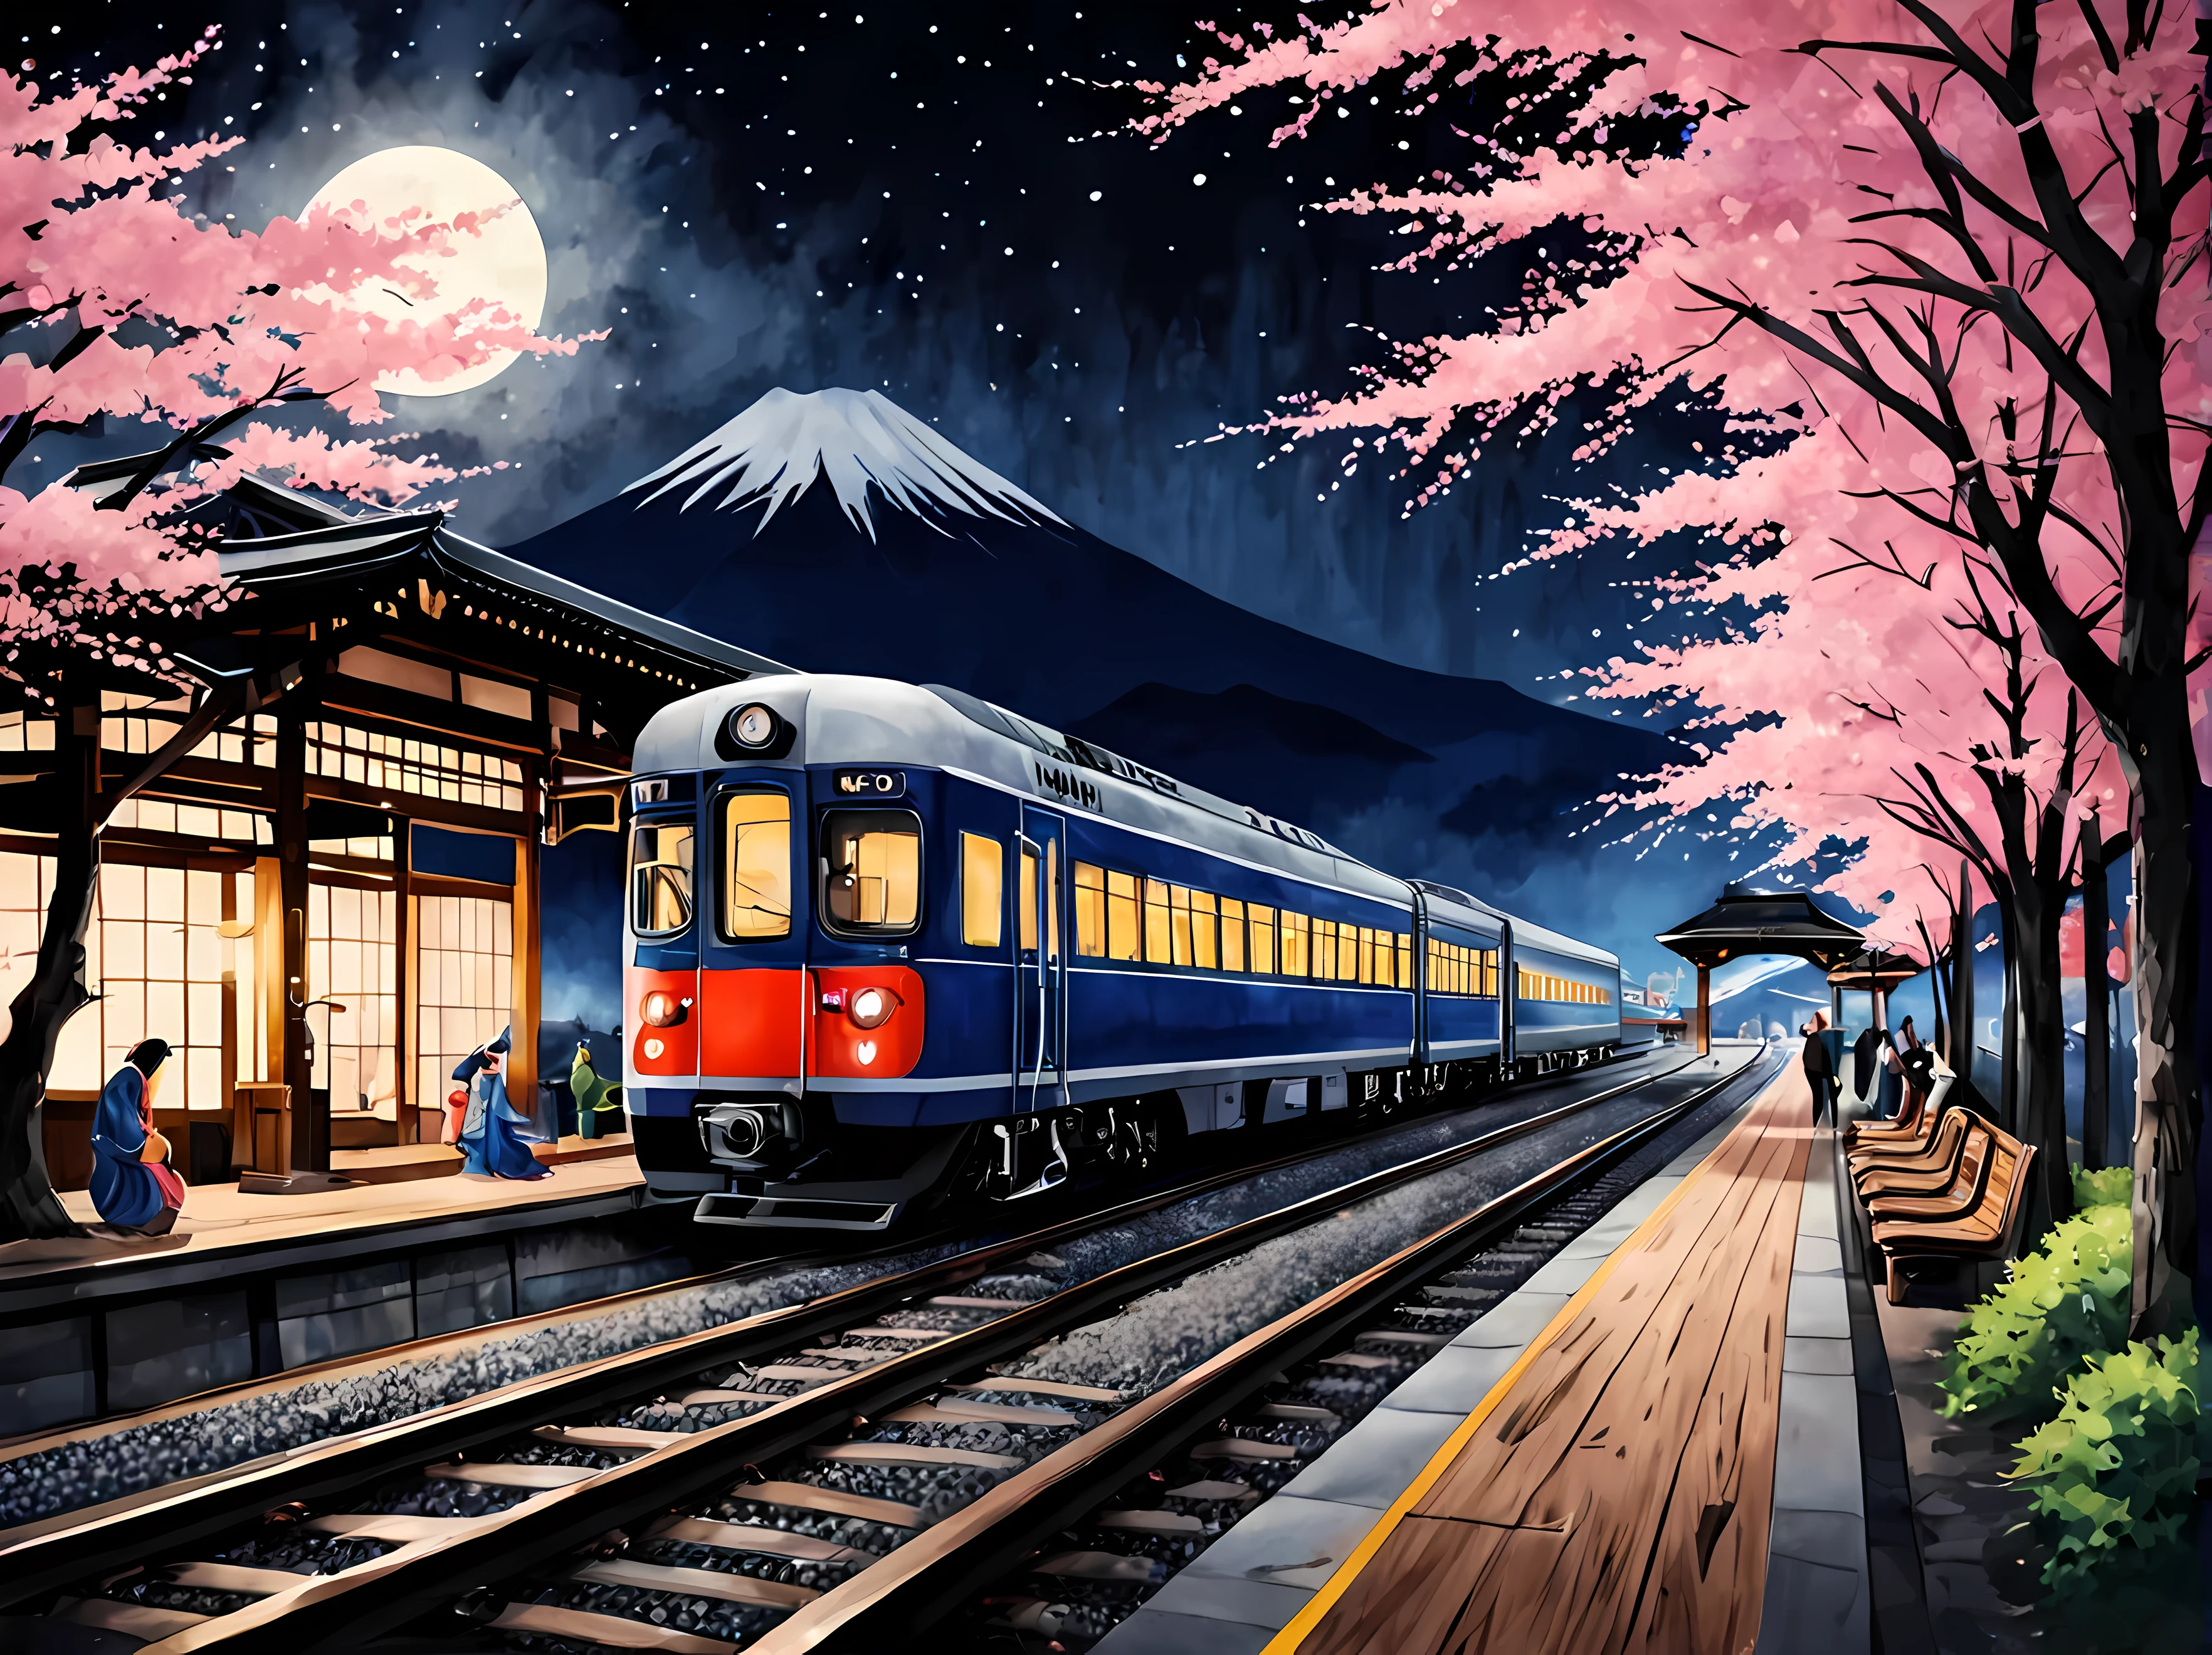 Захватывающая акварельная картина японского вокзала в весеннюю звездную ночь с полной луной., элегантный футуристический поезд на платформе, в окружении цветущей сакуры, традиционные элементы, такие как фонари и деревянные скамейки, Гора Фудзи на заднем плане, пассажиры в традиционной одежде, шедевр в максимальном разрешении 16К, Превосходное качество. | ((Более_деталь))